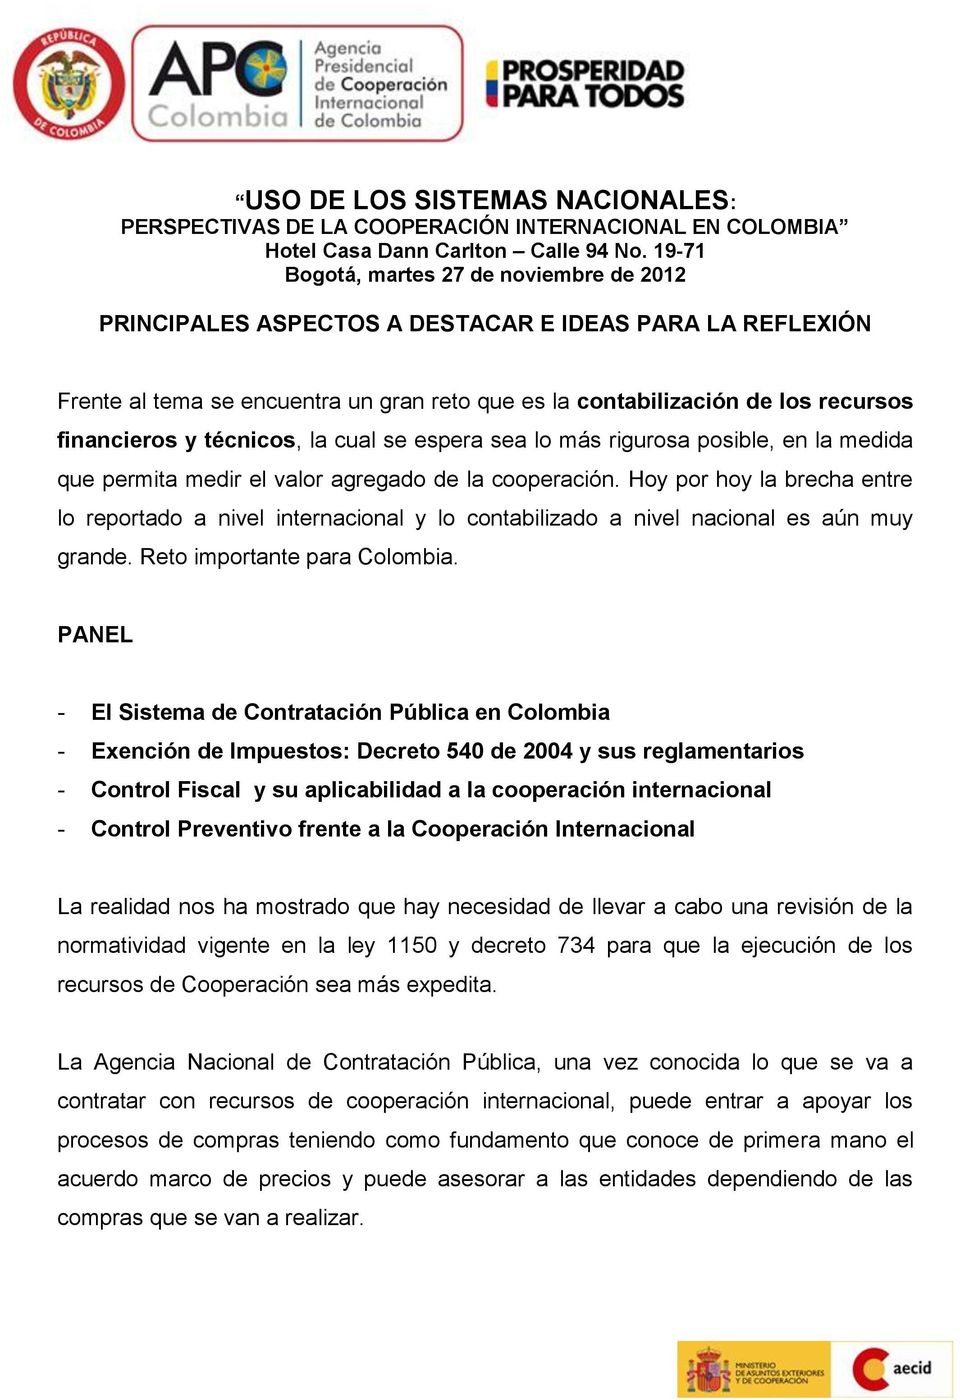 - El Sistema de Contratación Pública en Colombia - Exención de Impuestos: Decreto 540 de 2004 y sus reglamentarios - Control Fiscal y su aplicabilidad a la cooperación internacional - Control